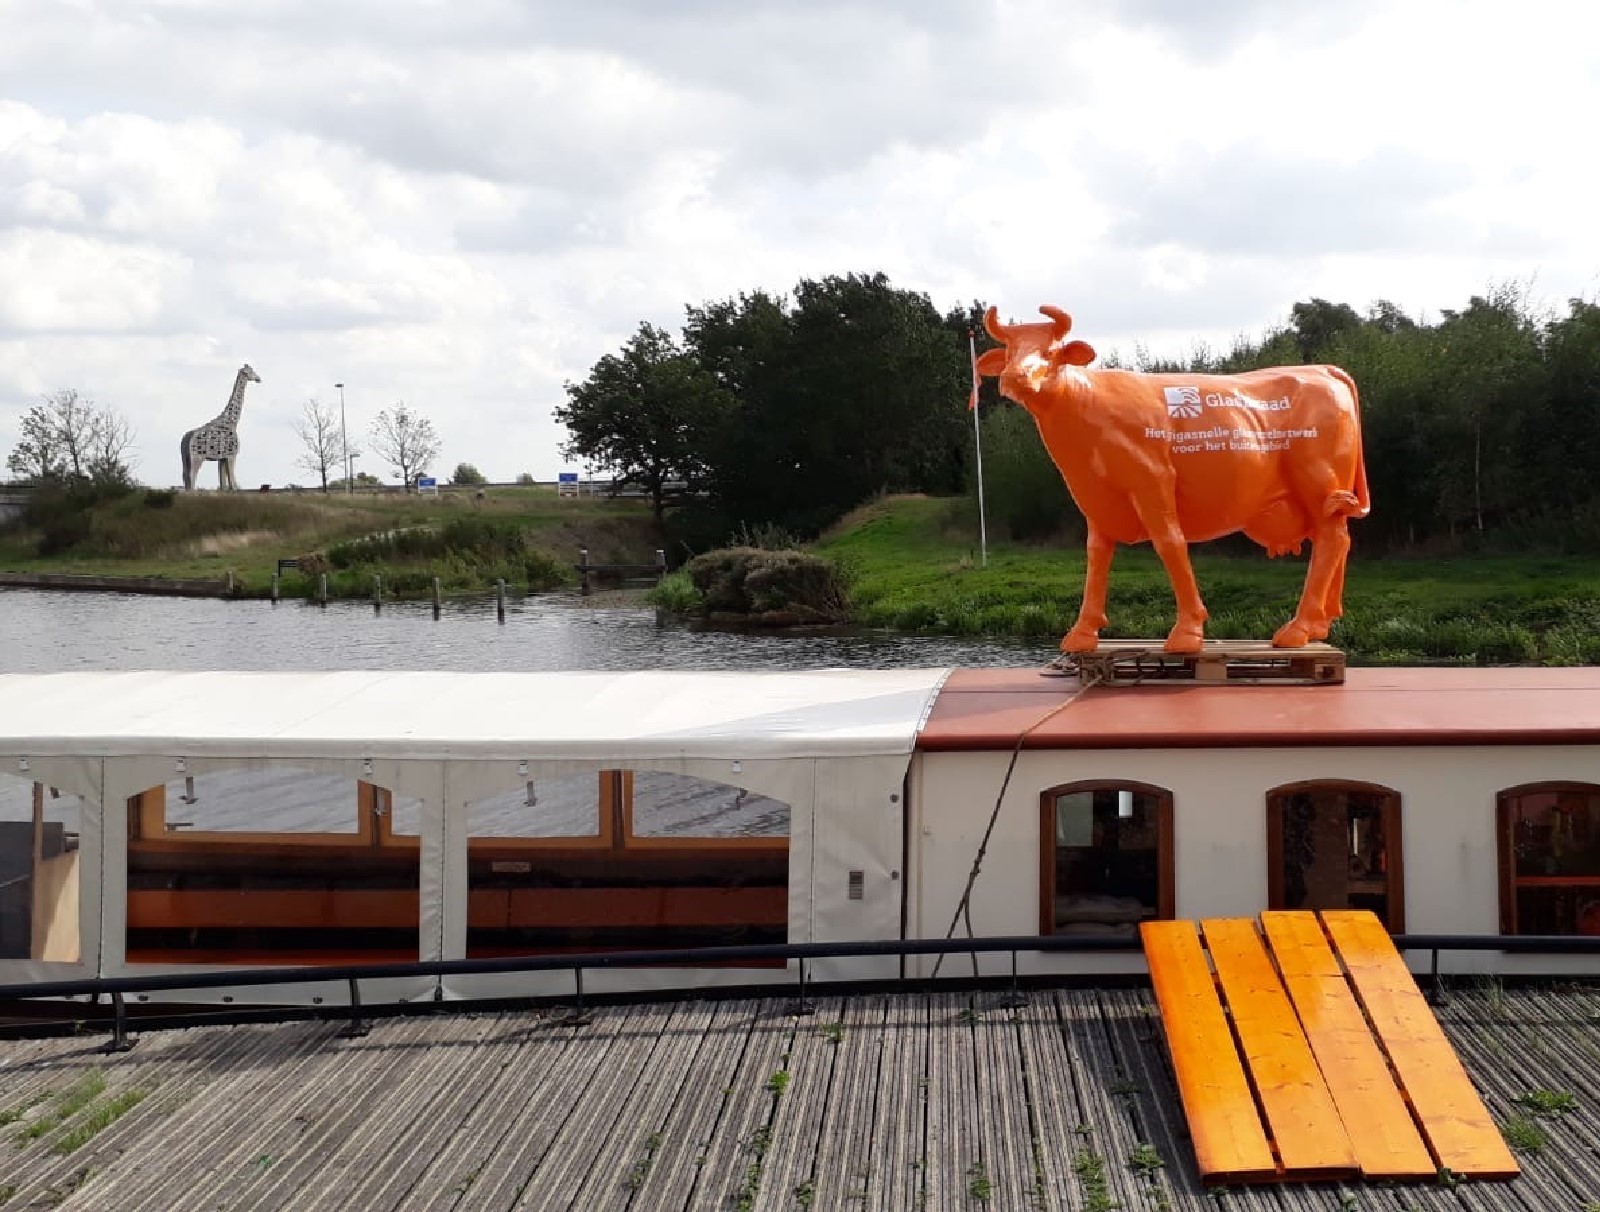 Afbeelding van plastic koe op boot